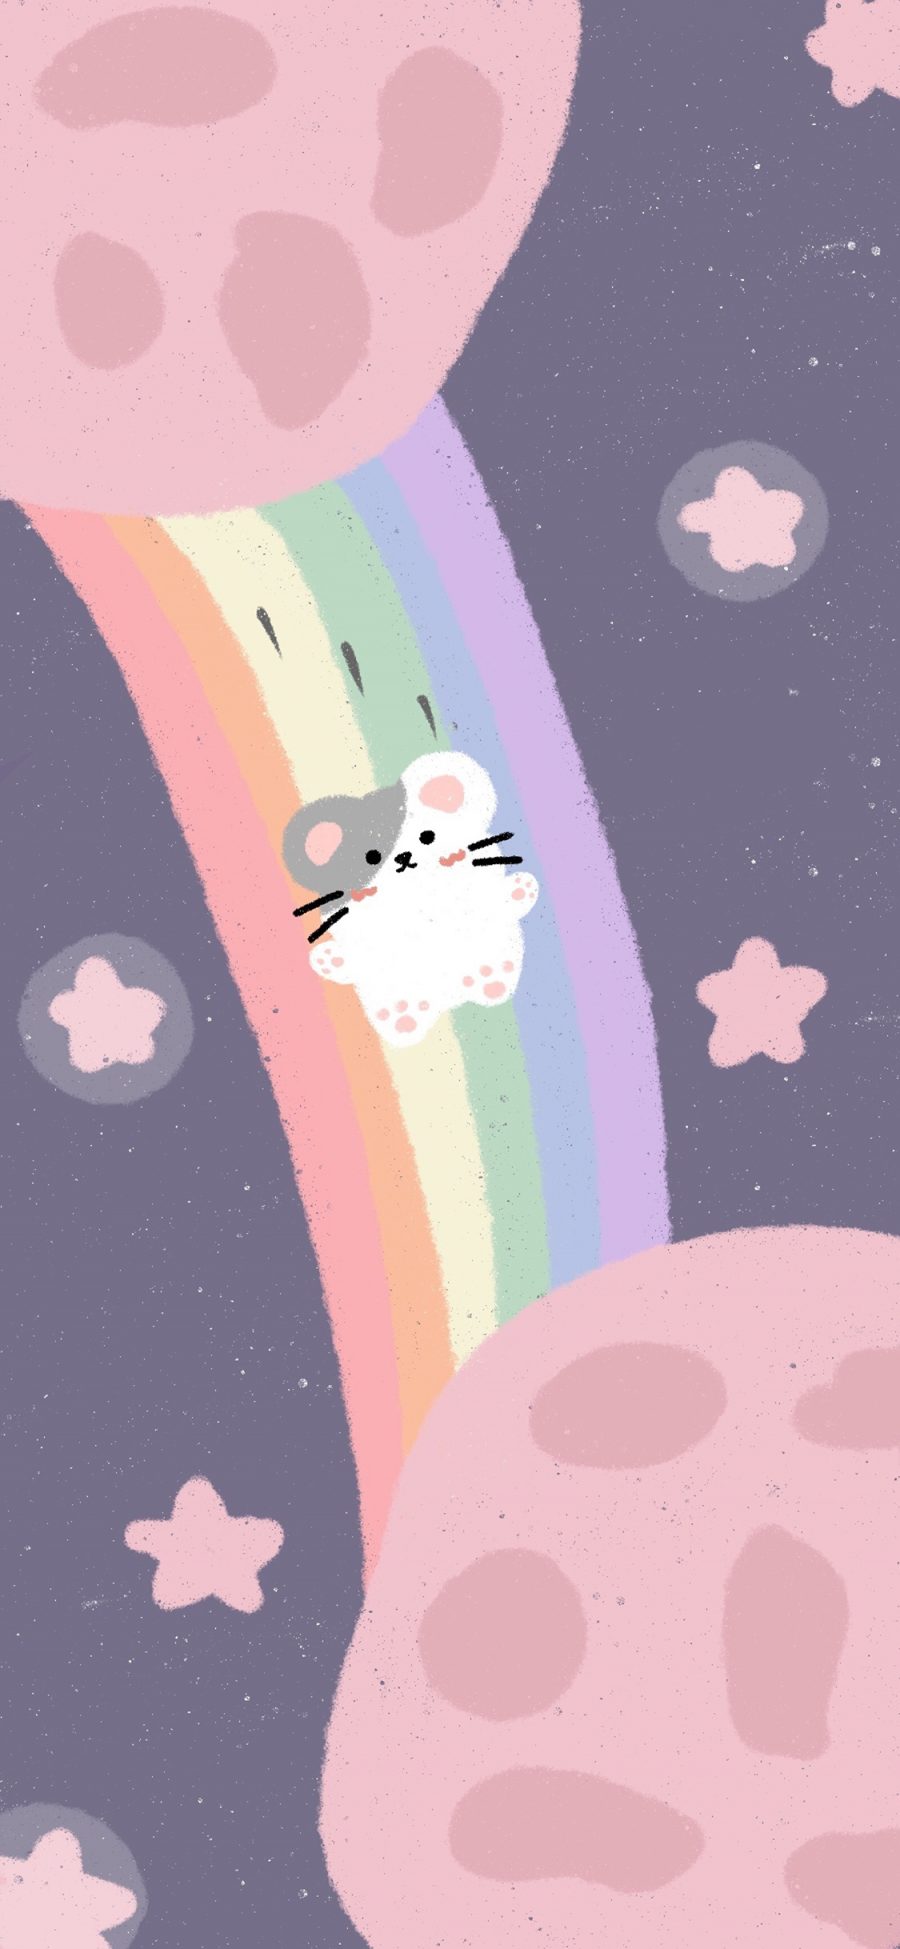 [2436×1125]彩虹 老鼠 宇宙 星球 星星 苹果手机动漫壁纸图片